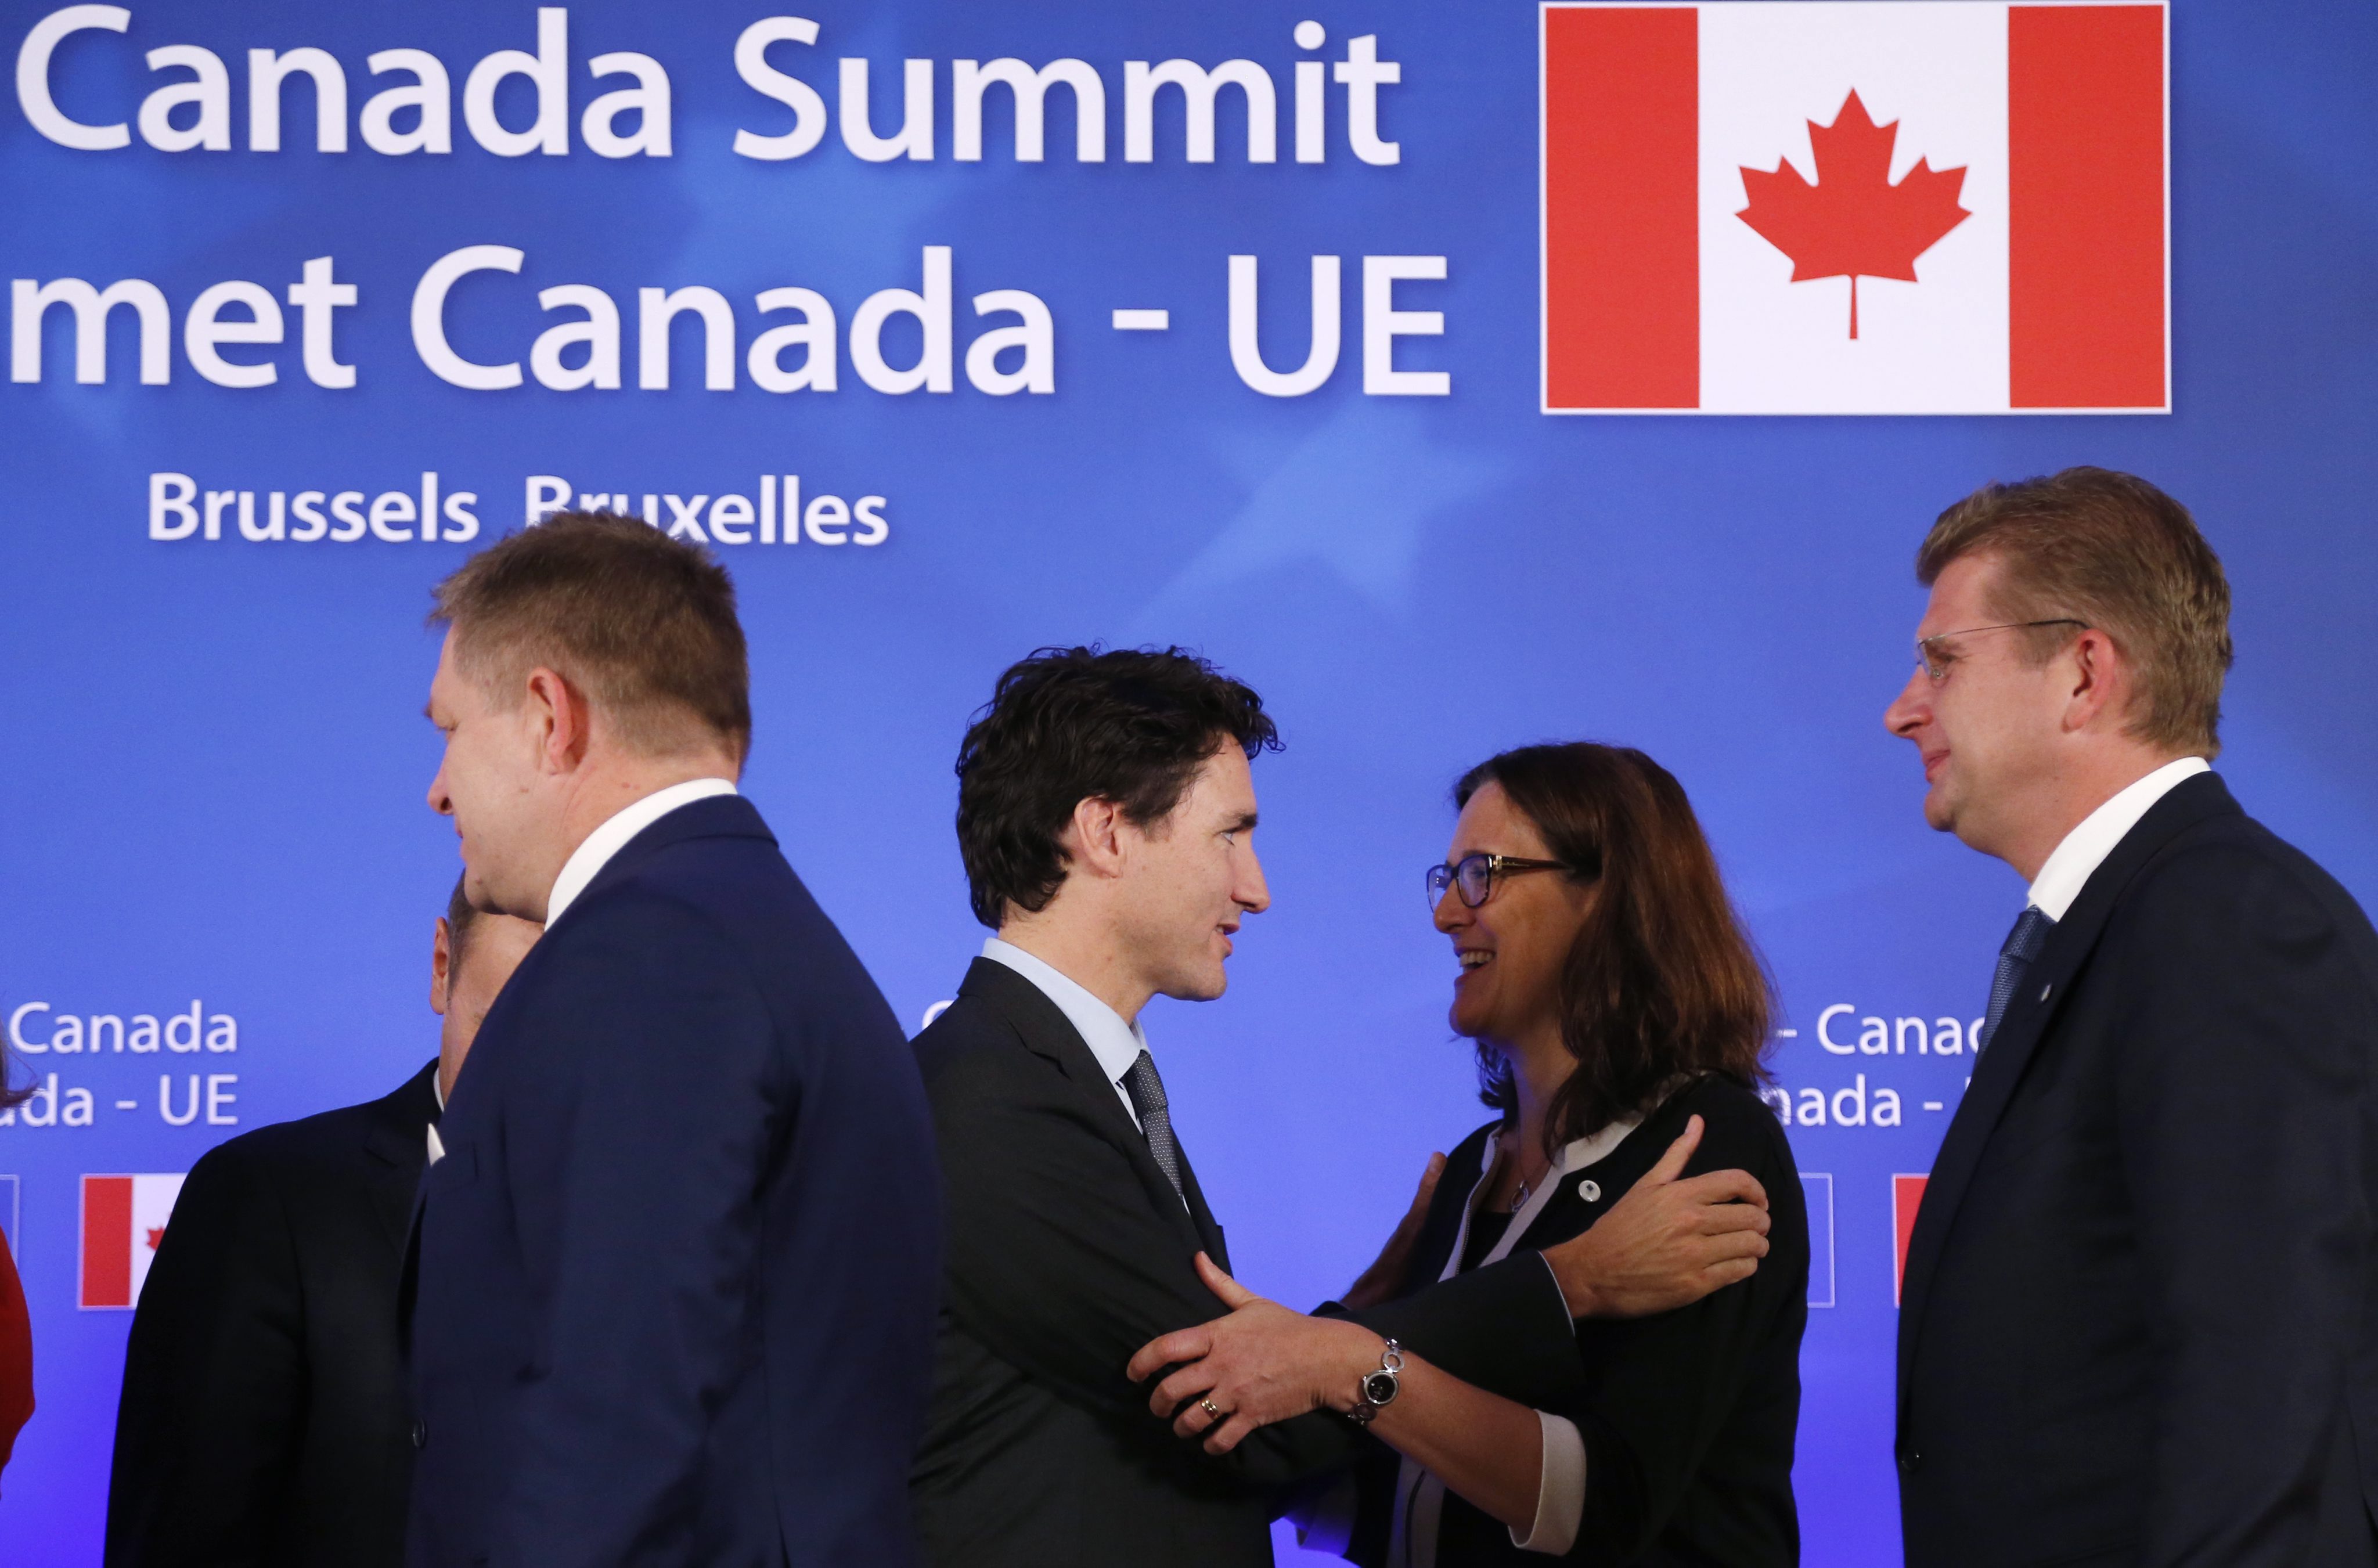 Канадският премиер Джъстин Трюдо и европейски лидери подписаха споразумението за свободна търговия Всеобхватното икономическо и търговско споразумение (СЕТА). Договорът идва след повече от седем години на преговори между Брюксел и Отава.
По време на церемония в Брюксел Джъстин Трюдо, председателят на Европейския съвет Доналд Туск, председателят на Европейската комисия Жан-Клод Юнкер и словашкият премиер Роберт Фицо, чиято държава държи ротационното председателство на Съвета на ЕС, подписаха споразумението.